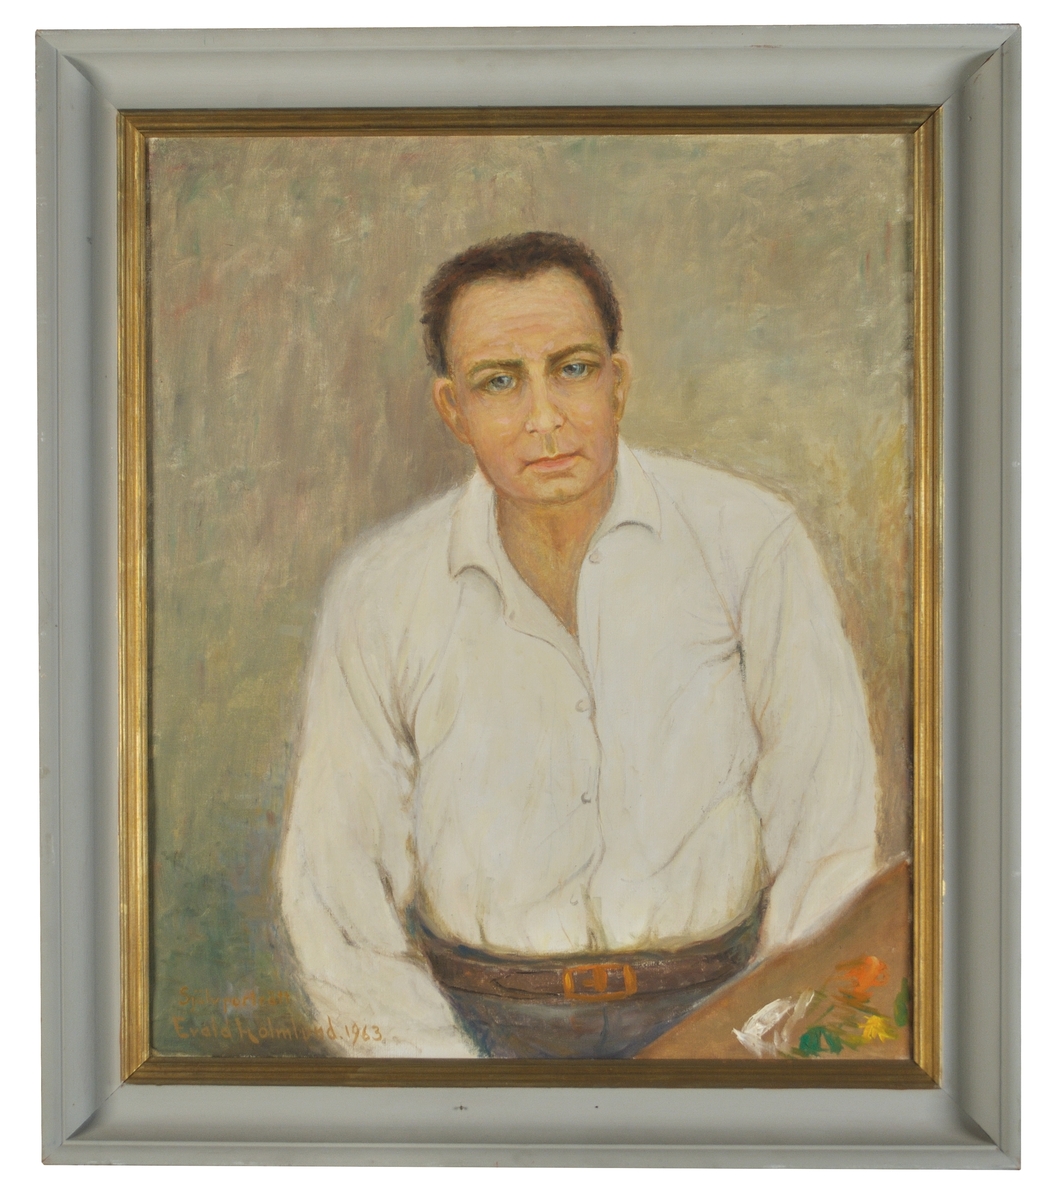 Porträtt, olja på duk, av Per Evald Holmlund, Gävle.
Konstnären en face iklädd vit skjorta med paletten skymtande nedtill till höger. Signerad nedtill till vänster: "Självporträtt Evald Holmlund 1963"